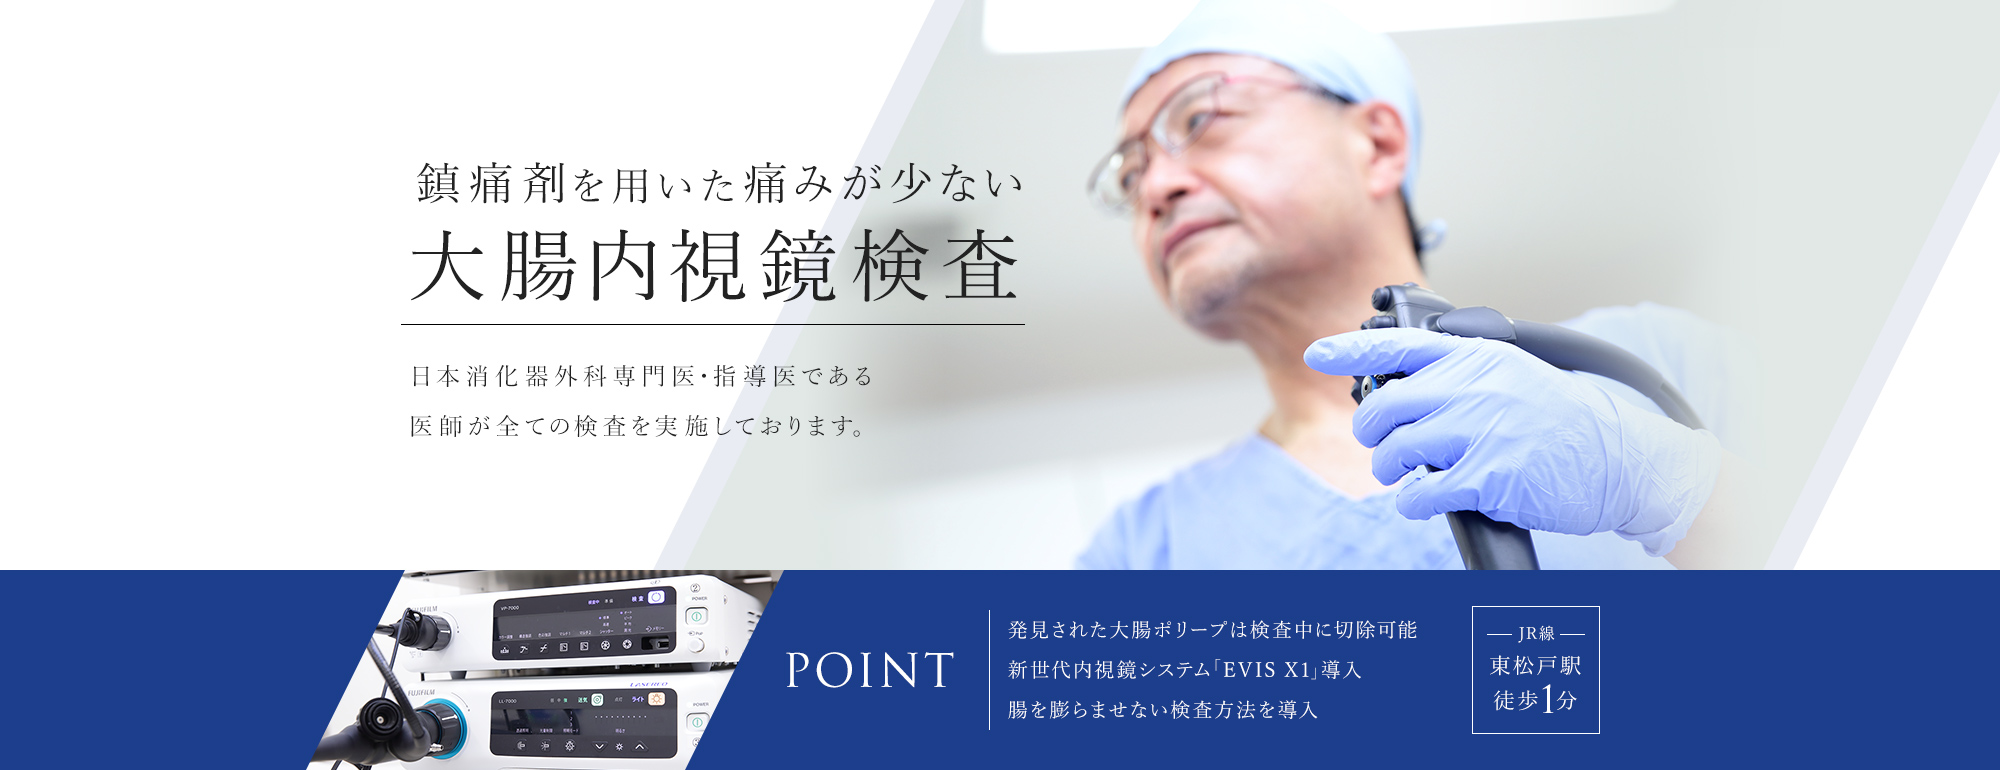 鎮痛剤を用いた痛みが少ない大腸内視鏡検査。日本消化器外科専門医・指導医である医師が全ての検査を実施しております。発見された大腸ポリープは検査中に切除可能。新世代内視鏡システム「EVIS X1」導入。腸を膨らませない検査方法を導入。東松戸駅徒歩1分